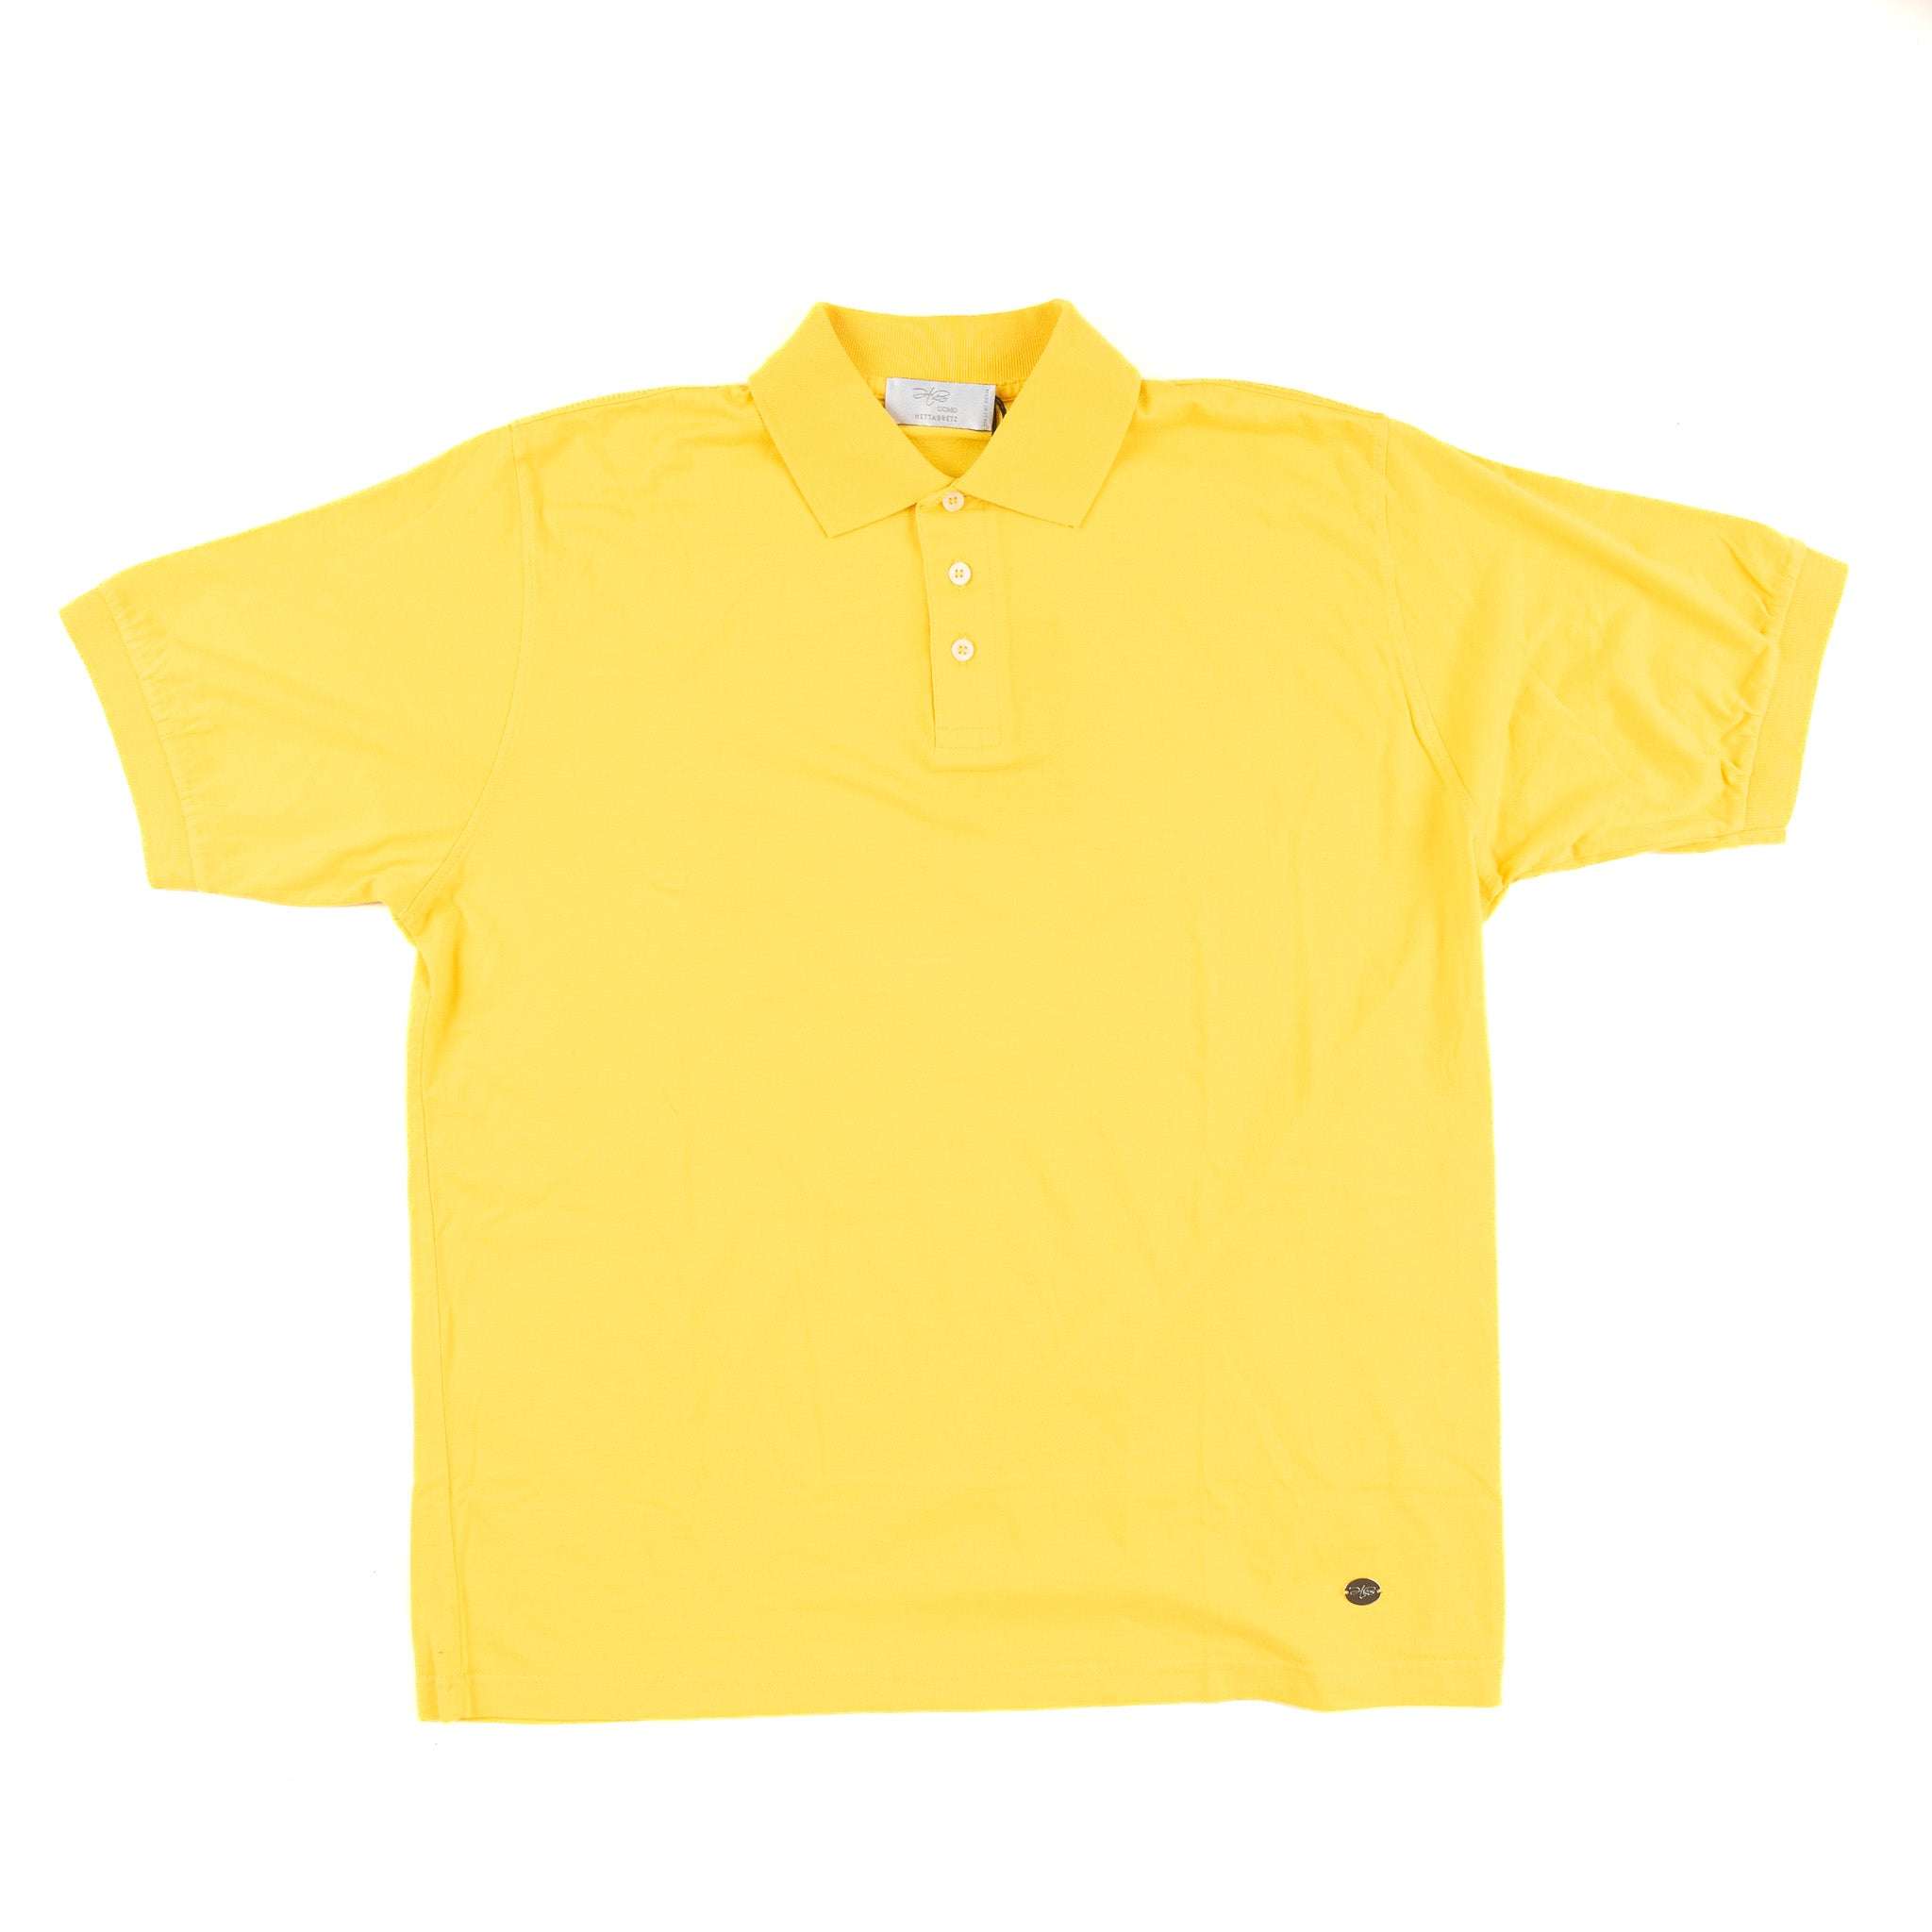 Hettabretz - Men's Three-Button Polo Shirt ᐅ €99 SALE | Fashion Flow ...